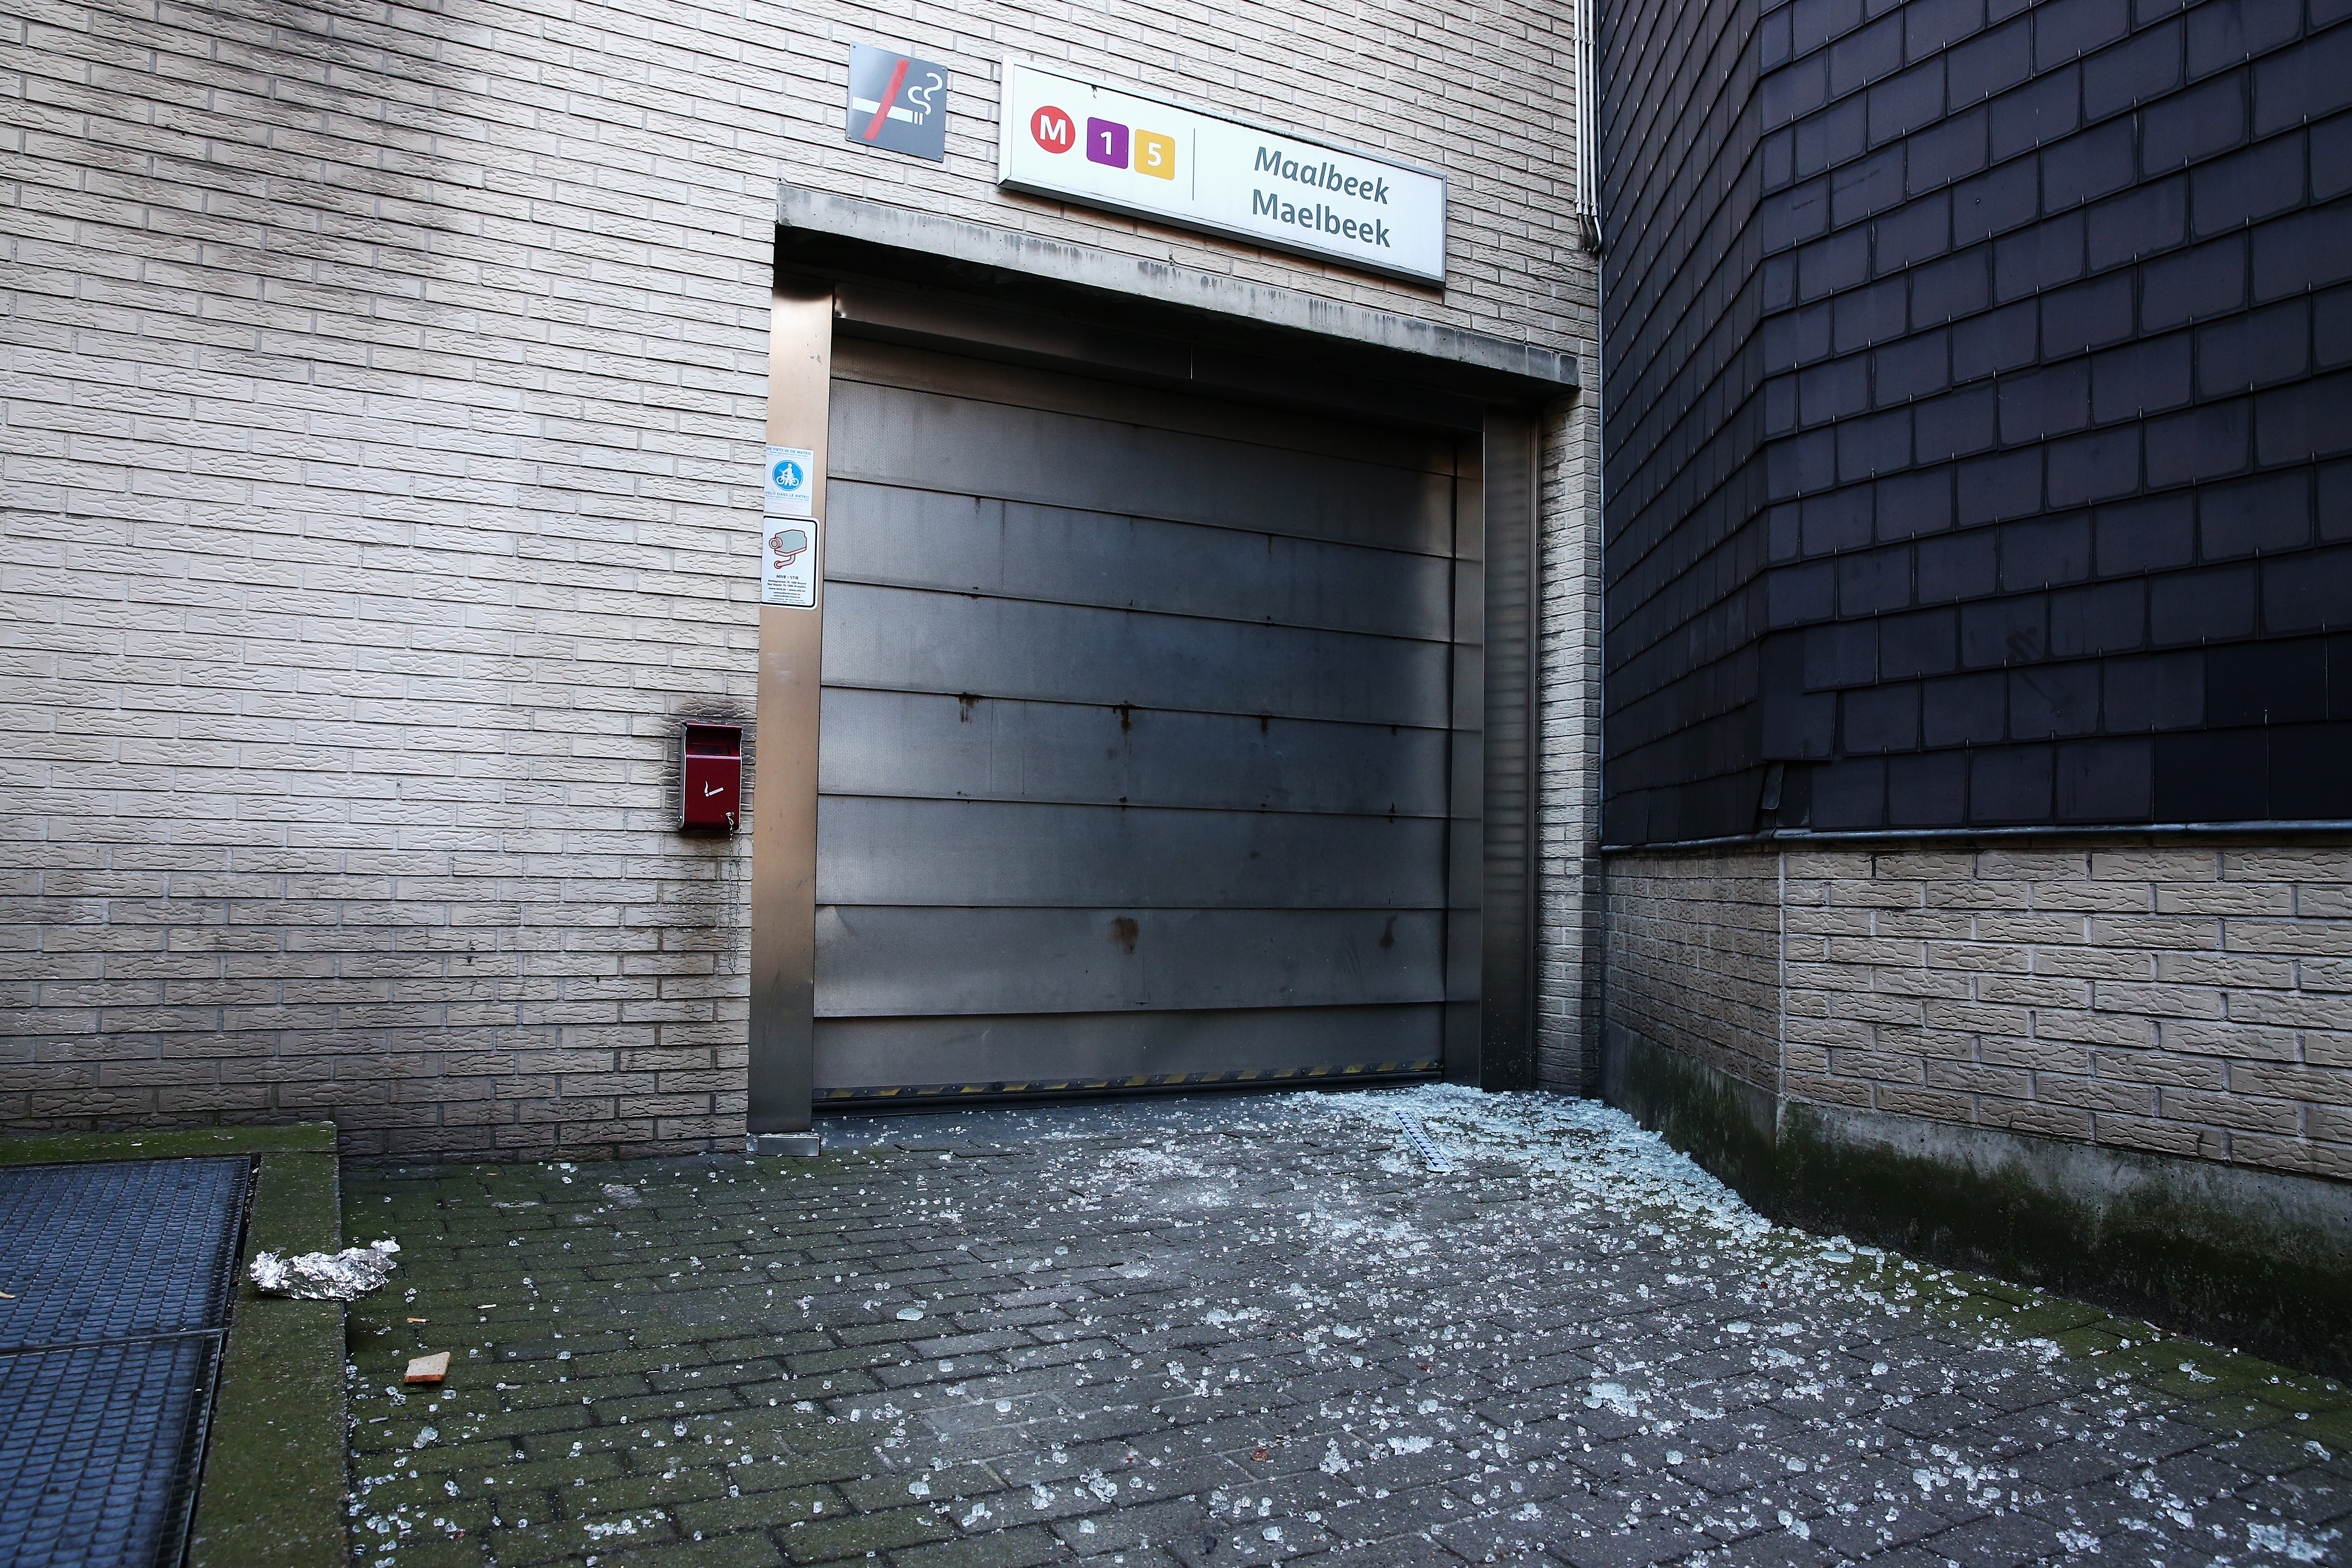 Broken glass is seen outside an entrance to Maelbeek metro station. (Getty)